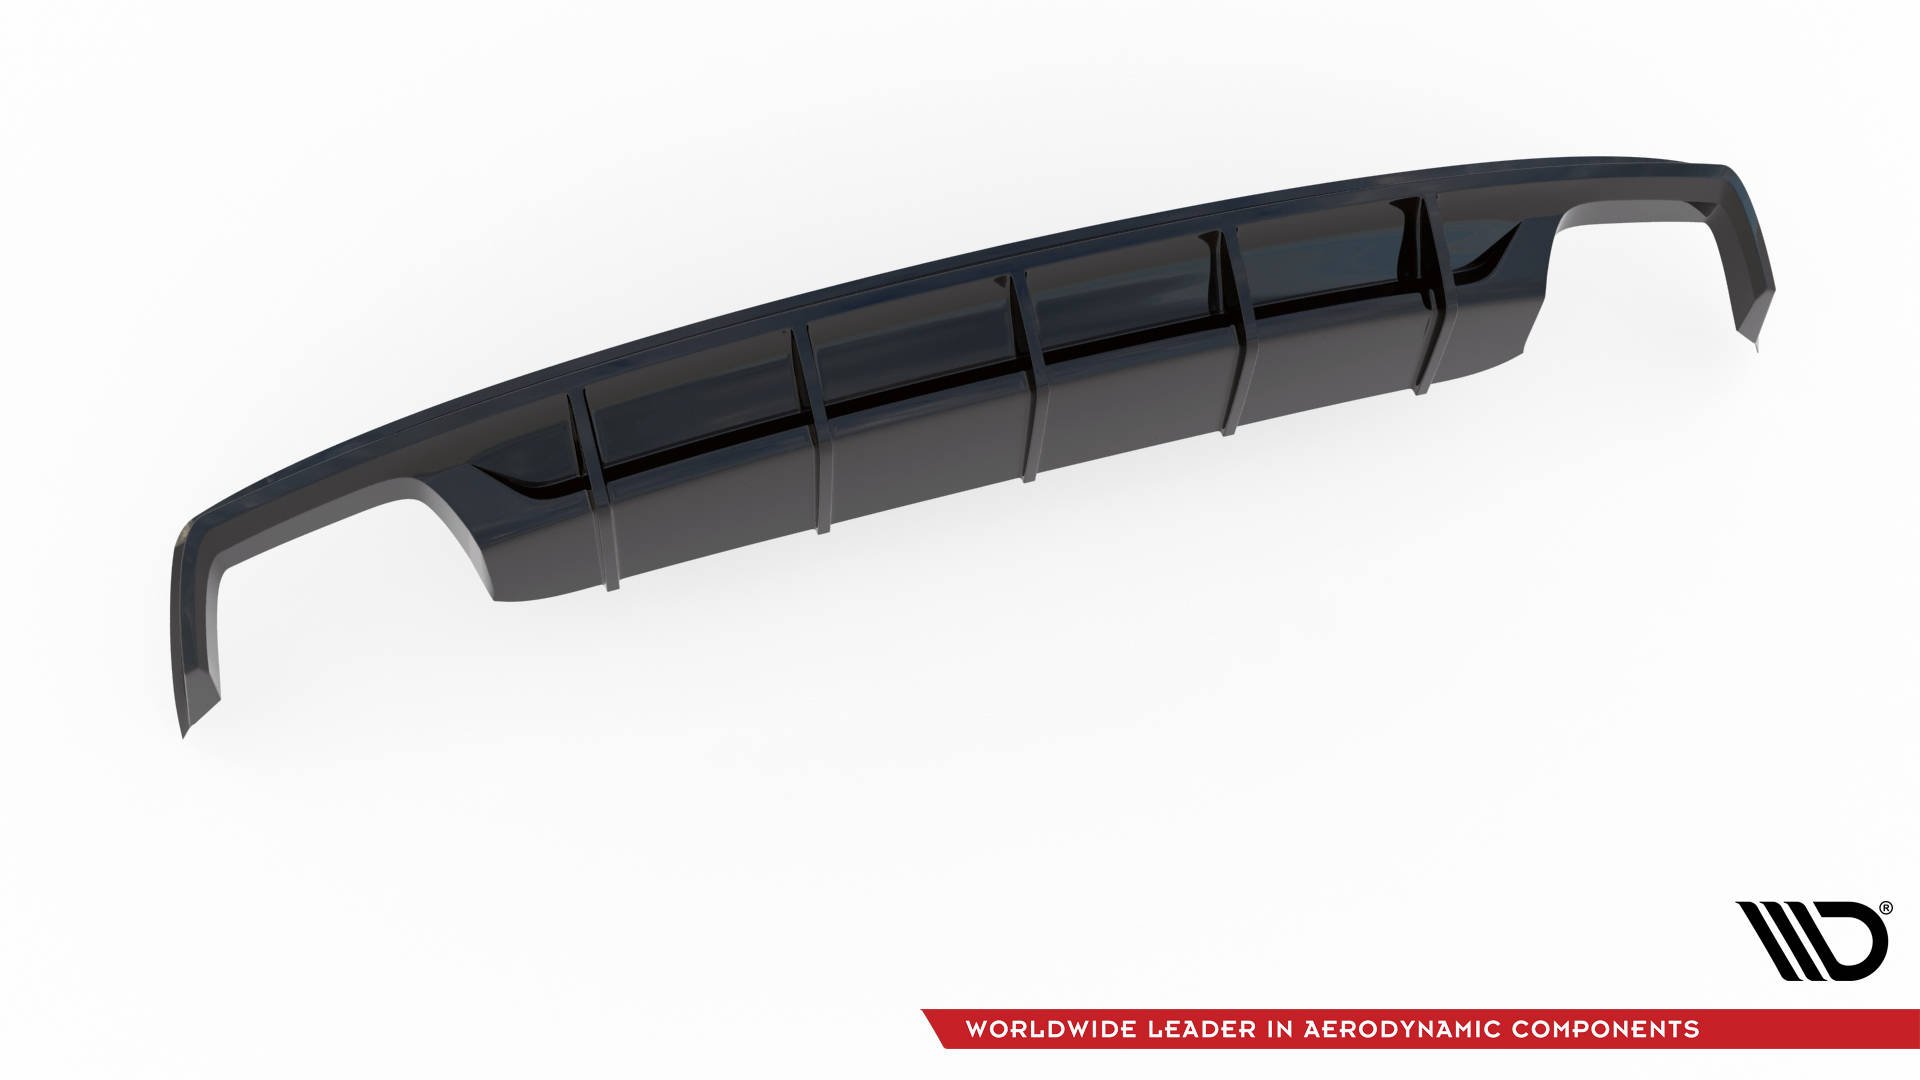 Maxton Design Diffusor Heck Ansatz für Audi S8 D4 Facelift schwarz Hochglanz